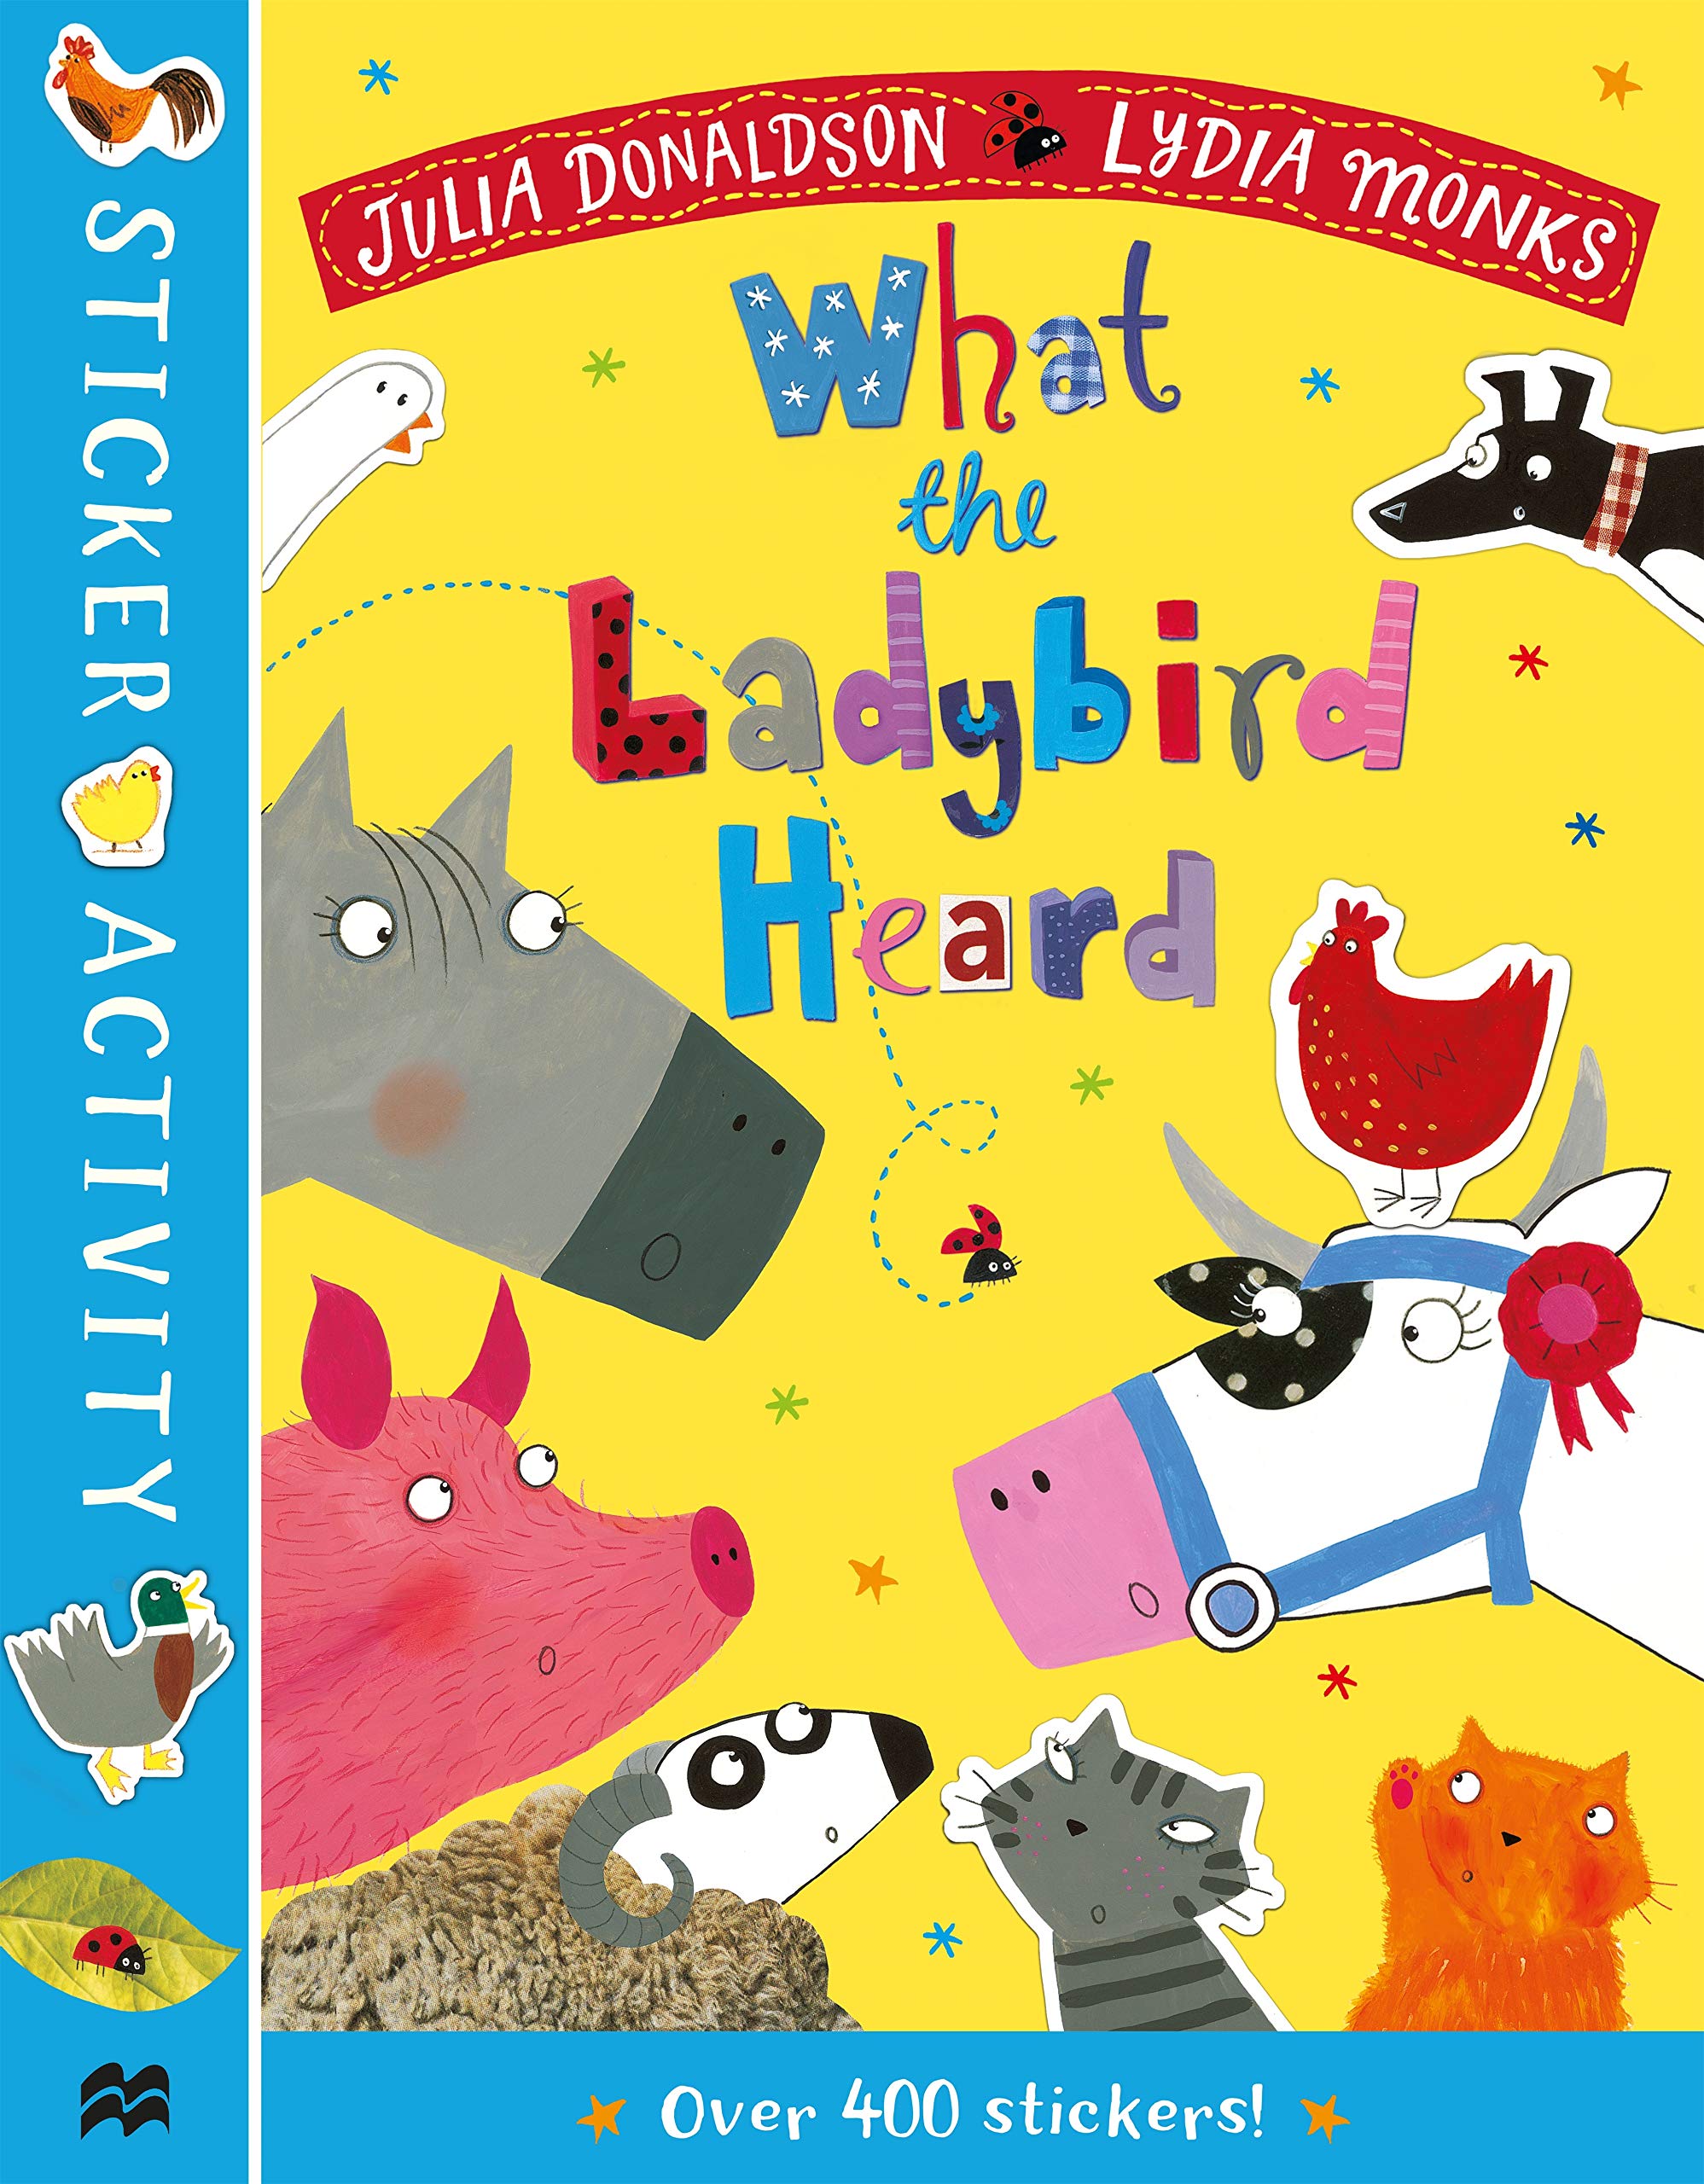 What the Ladybird Heard Sticker Book